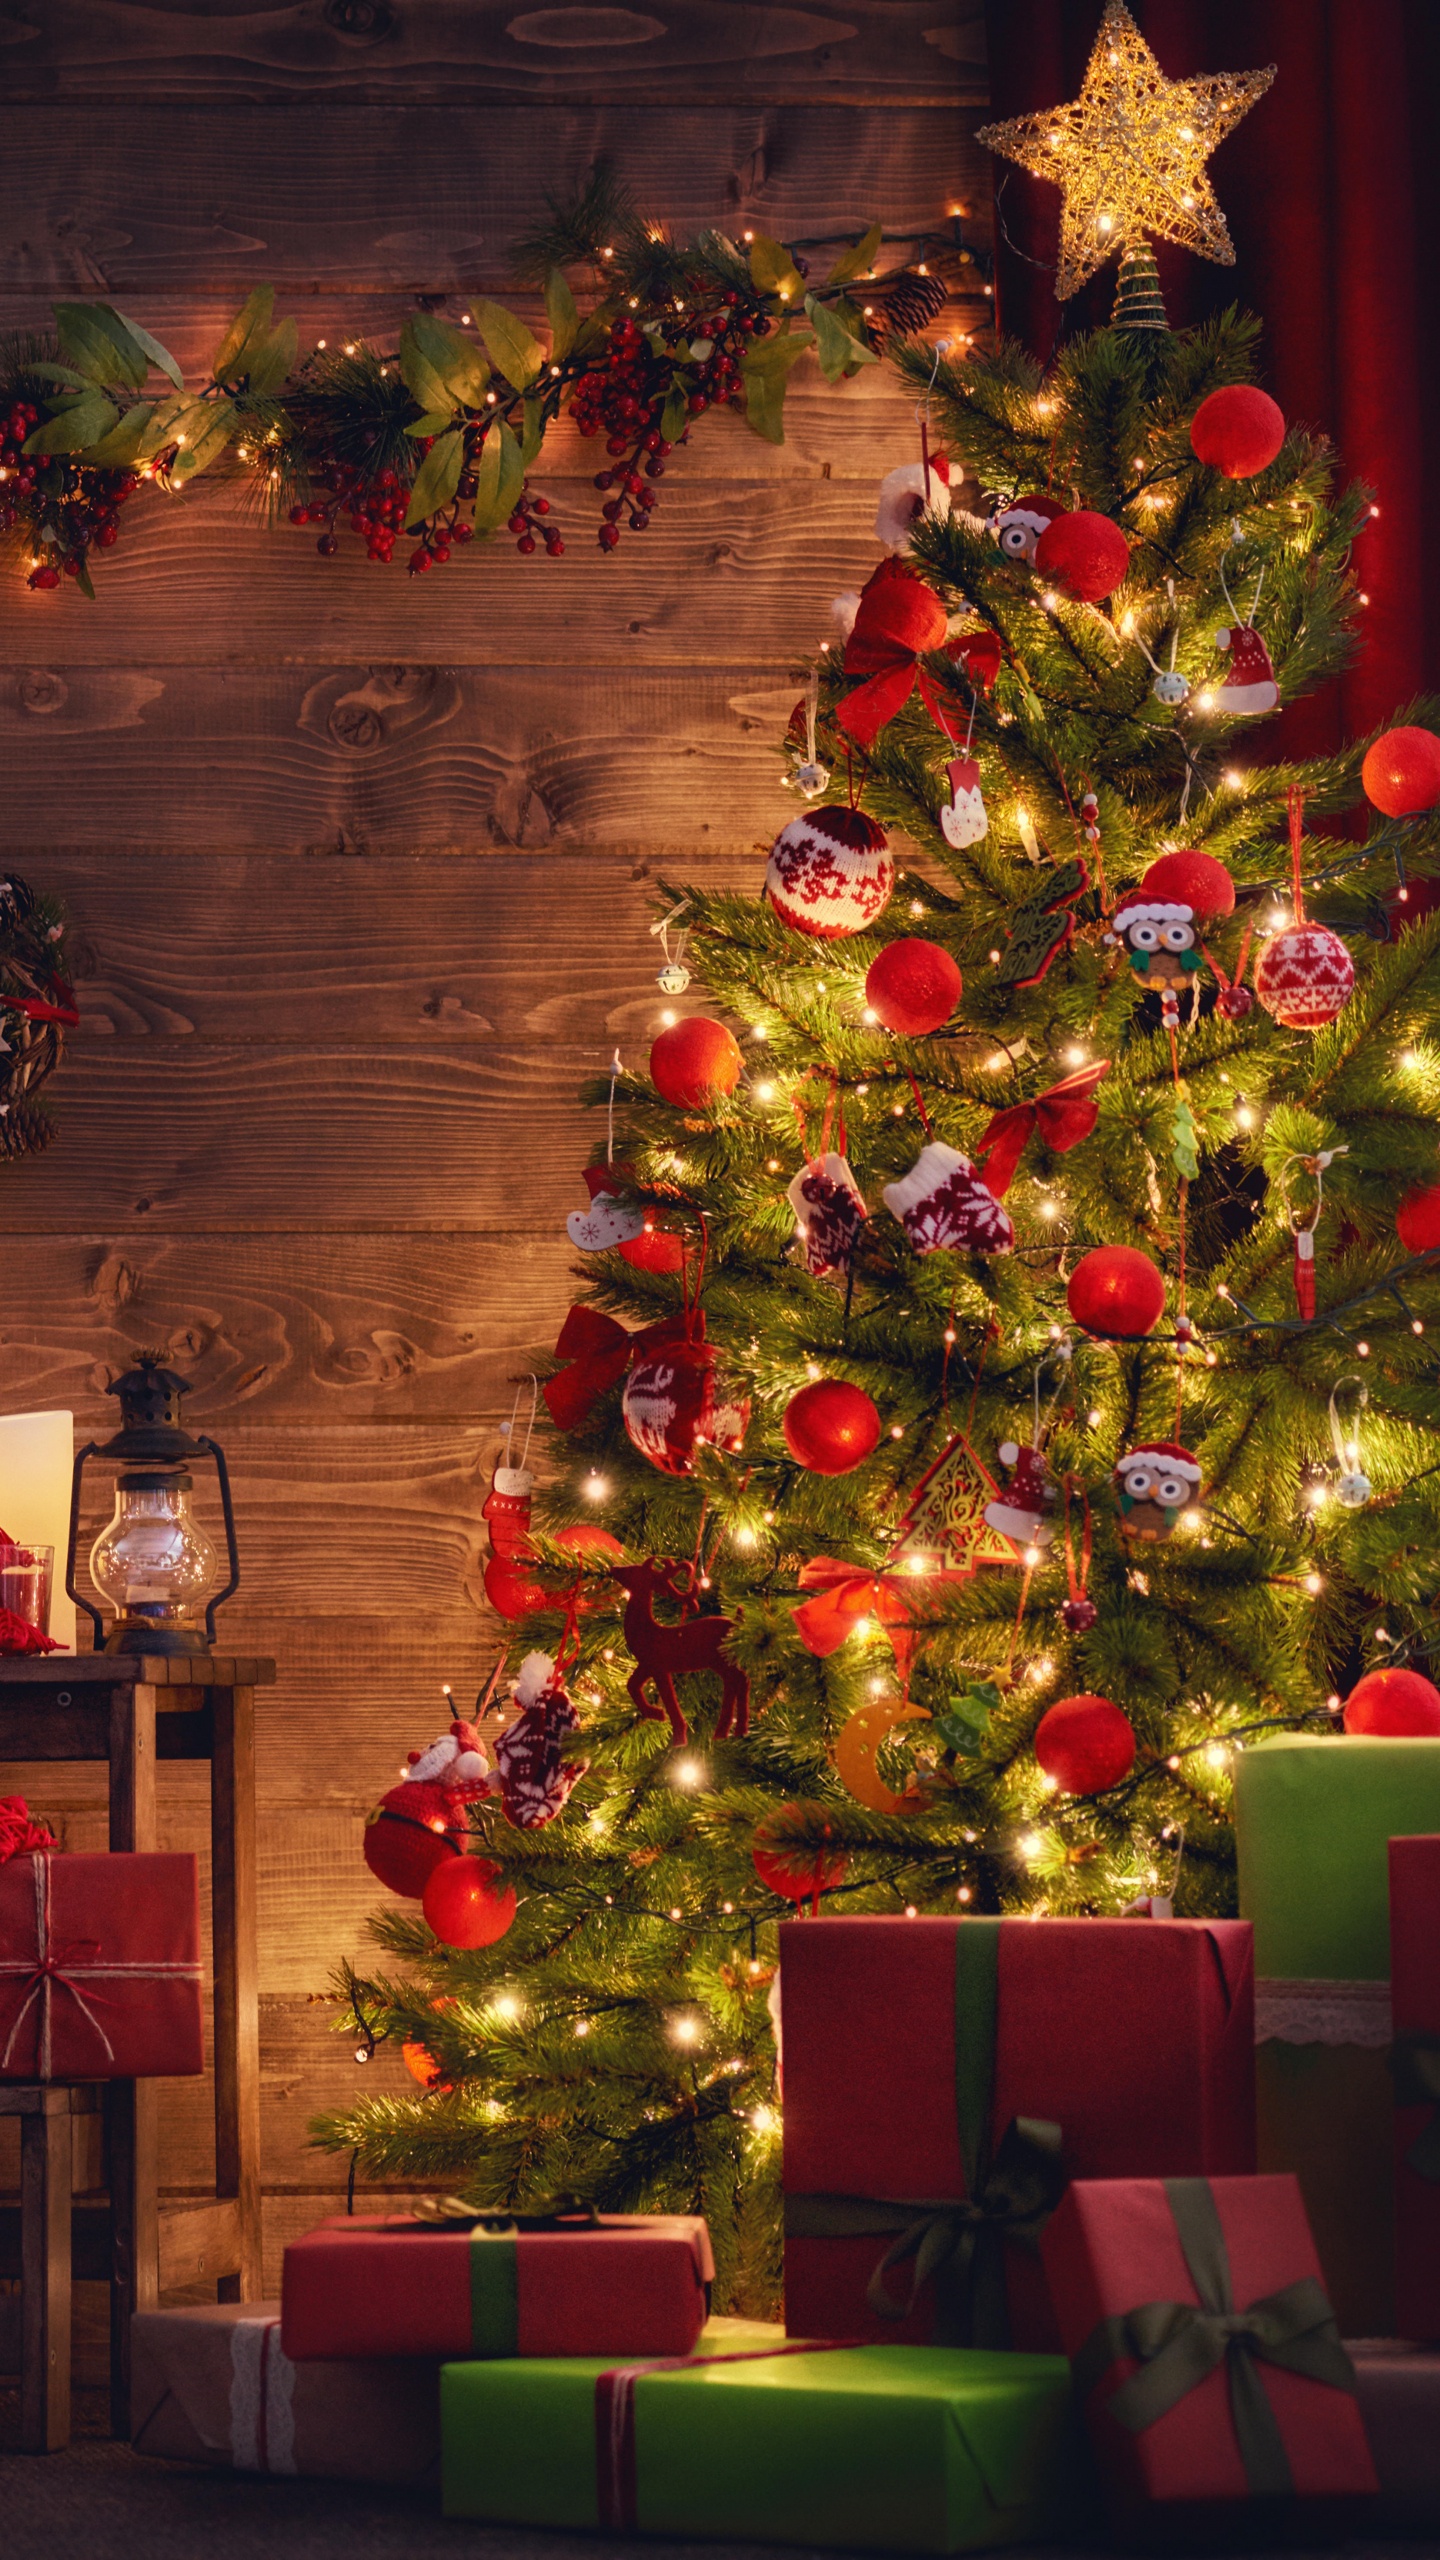 El Día De Navidad, Decoración de la Navidad, Navidad, Luces de Navidad, Calendario de Adviento de Navidad de Madera. Wallpaper in 1440x2560 Resolution